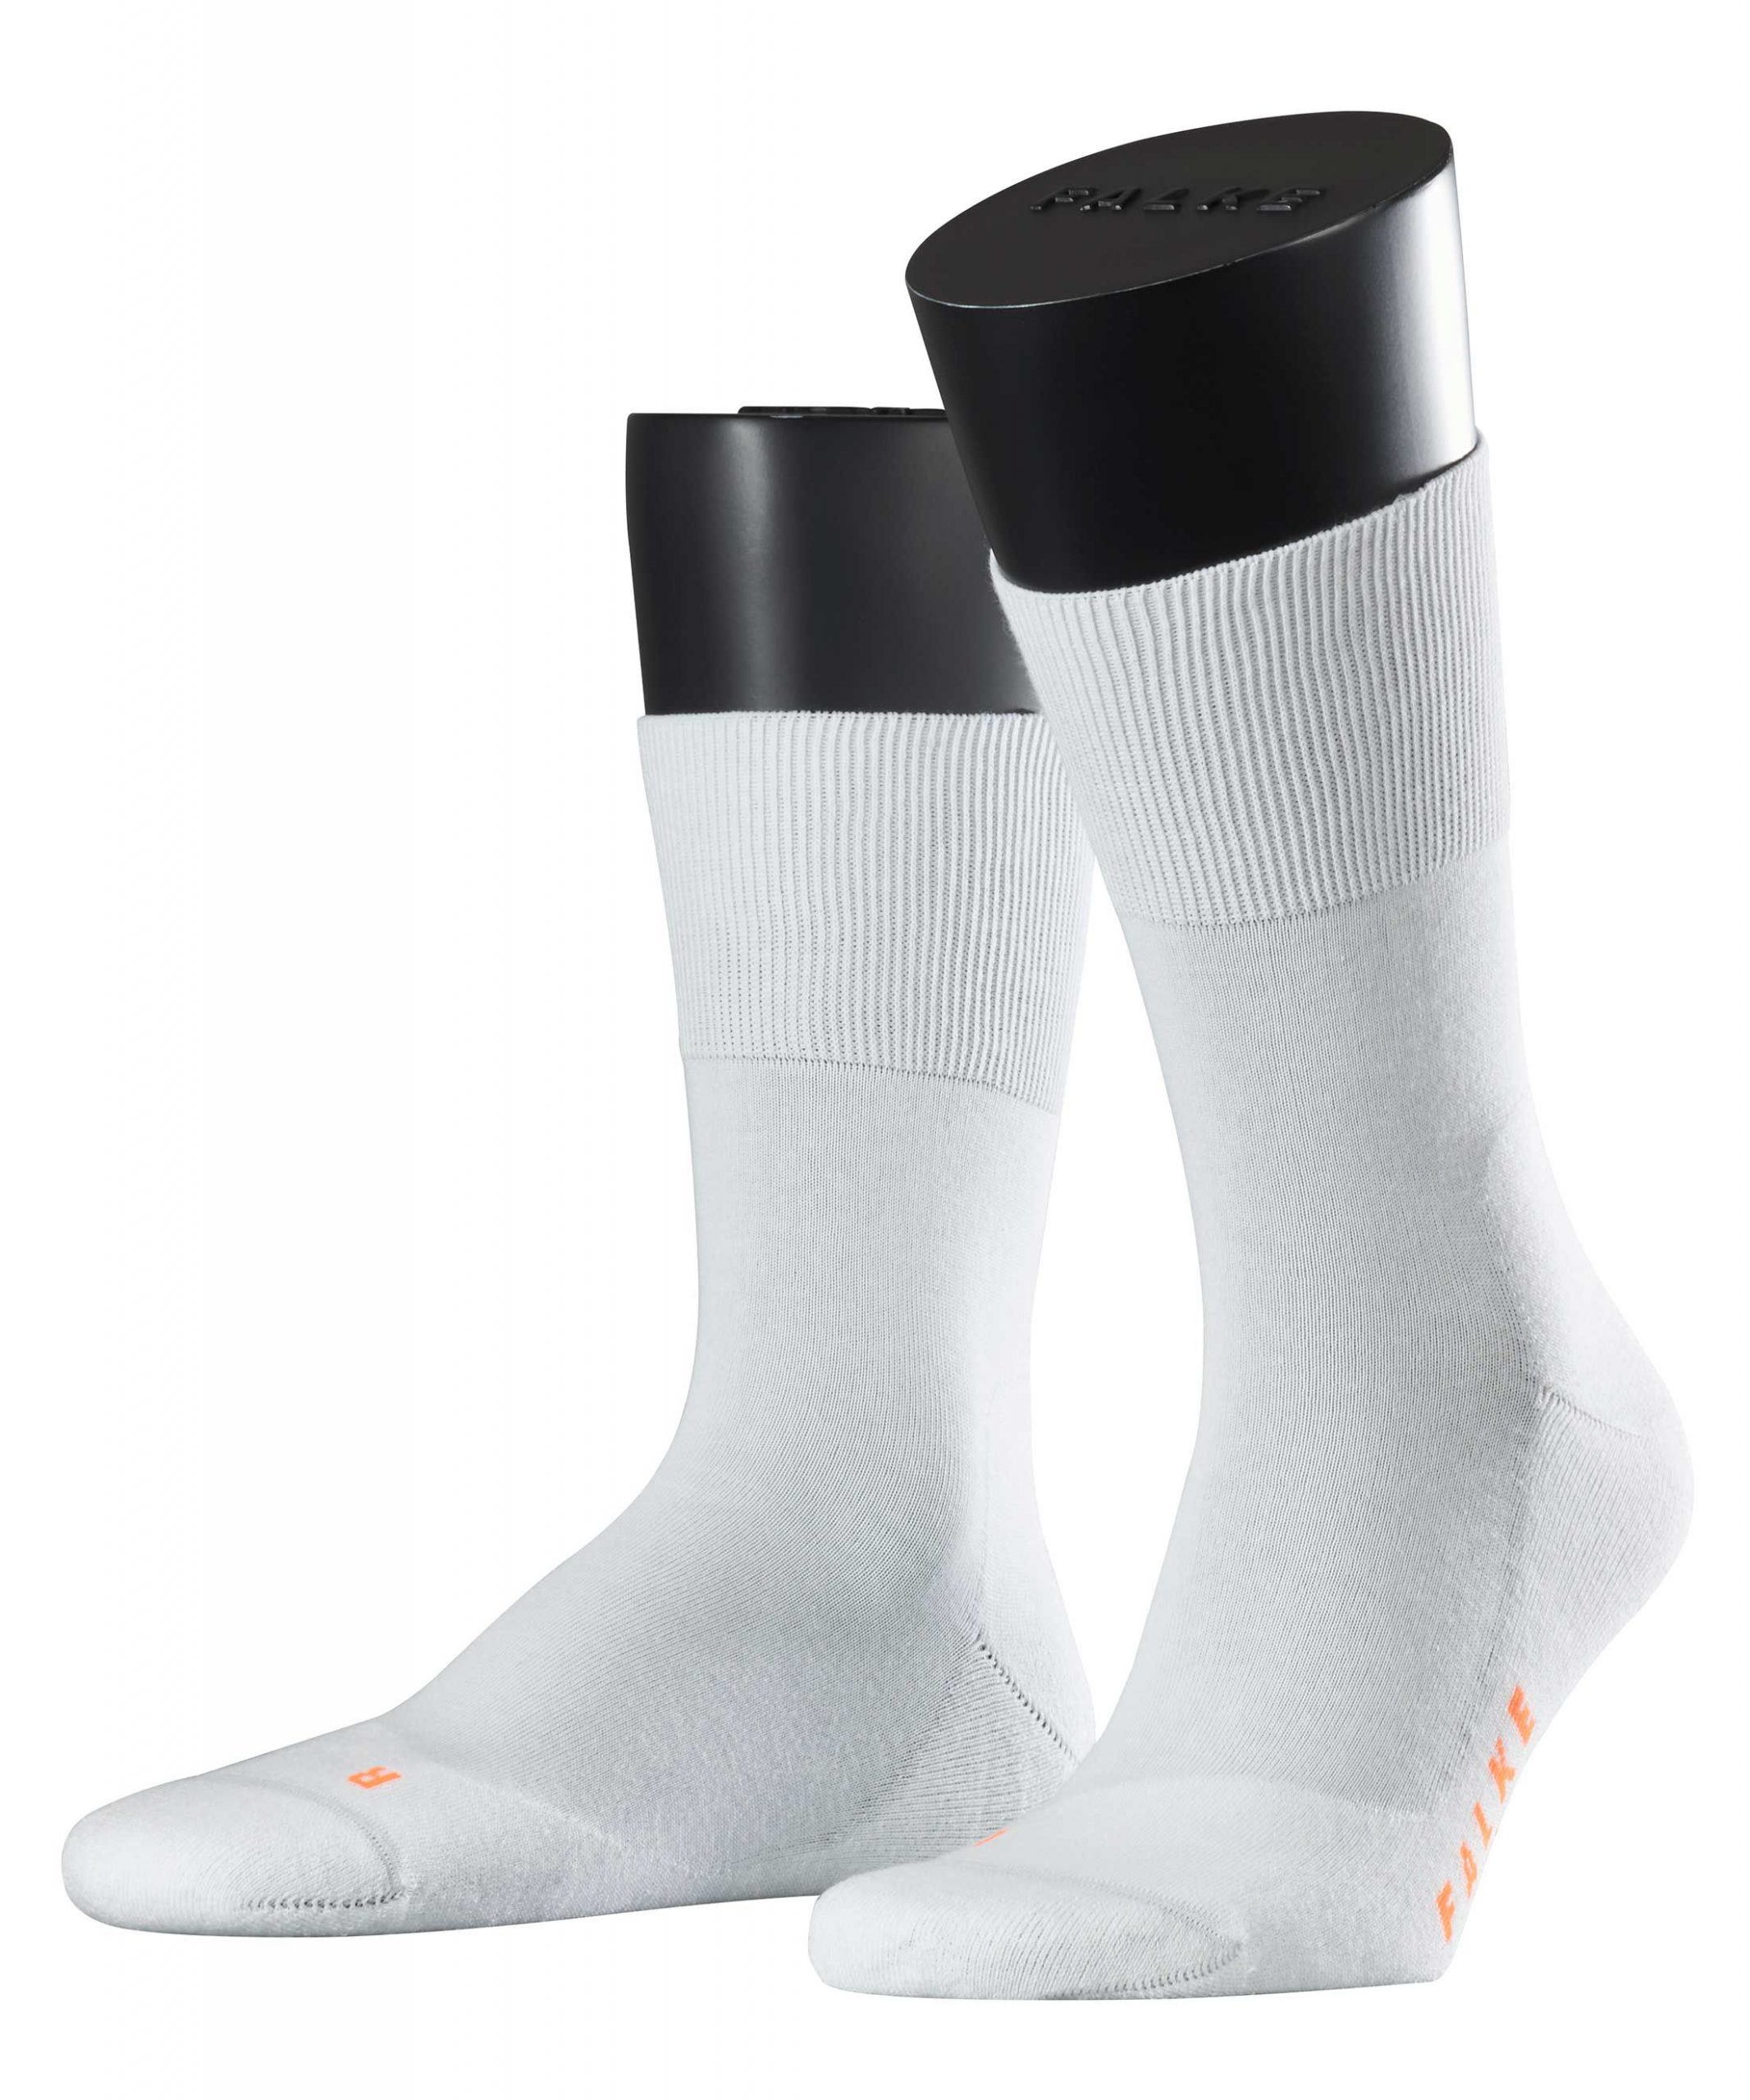 Spelen met hier Dodelijk Analist gesponsord single running sokken aanbieding Inspireren Luchtpost  Pilfer